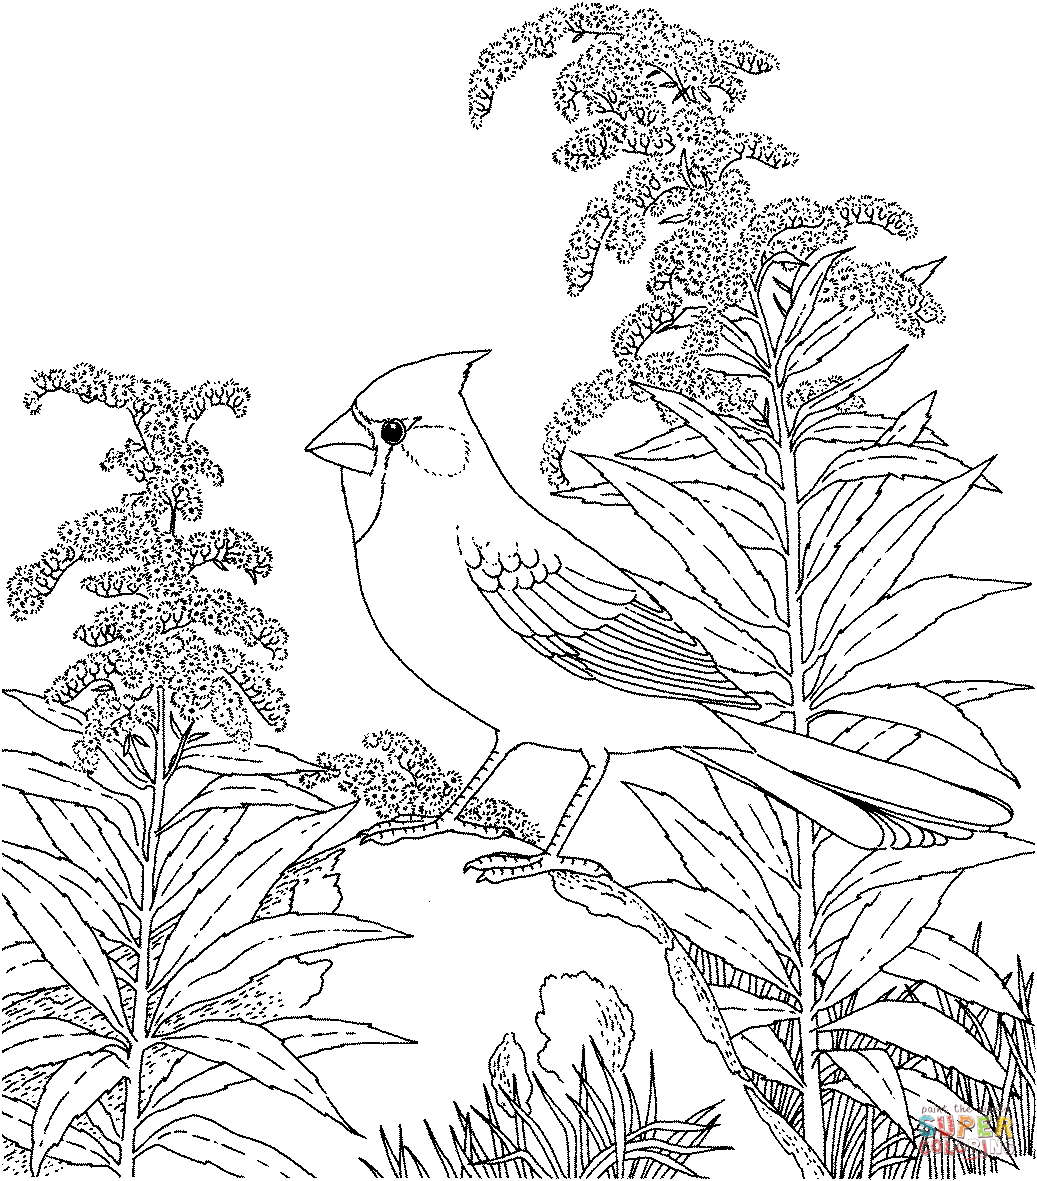 Tranh tô màu con chim đậu trên bông hoa